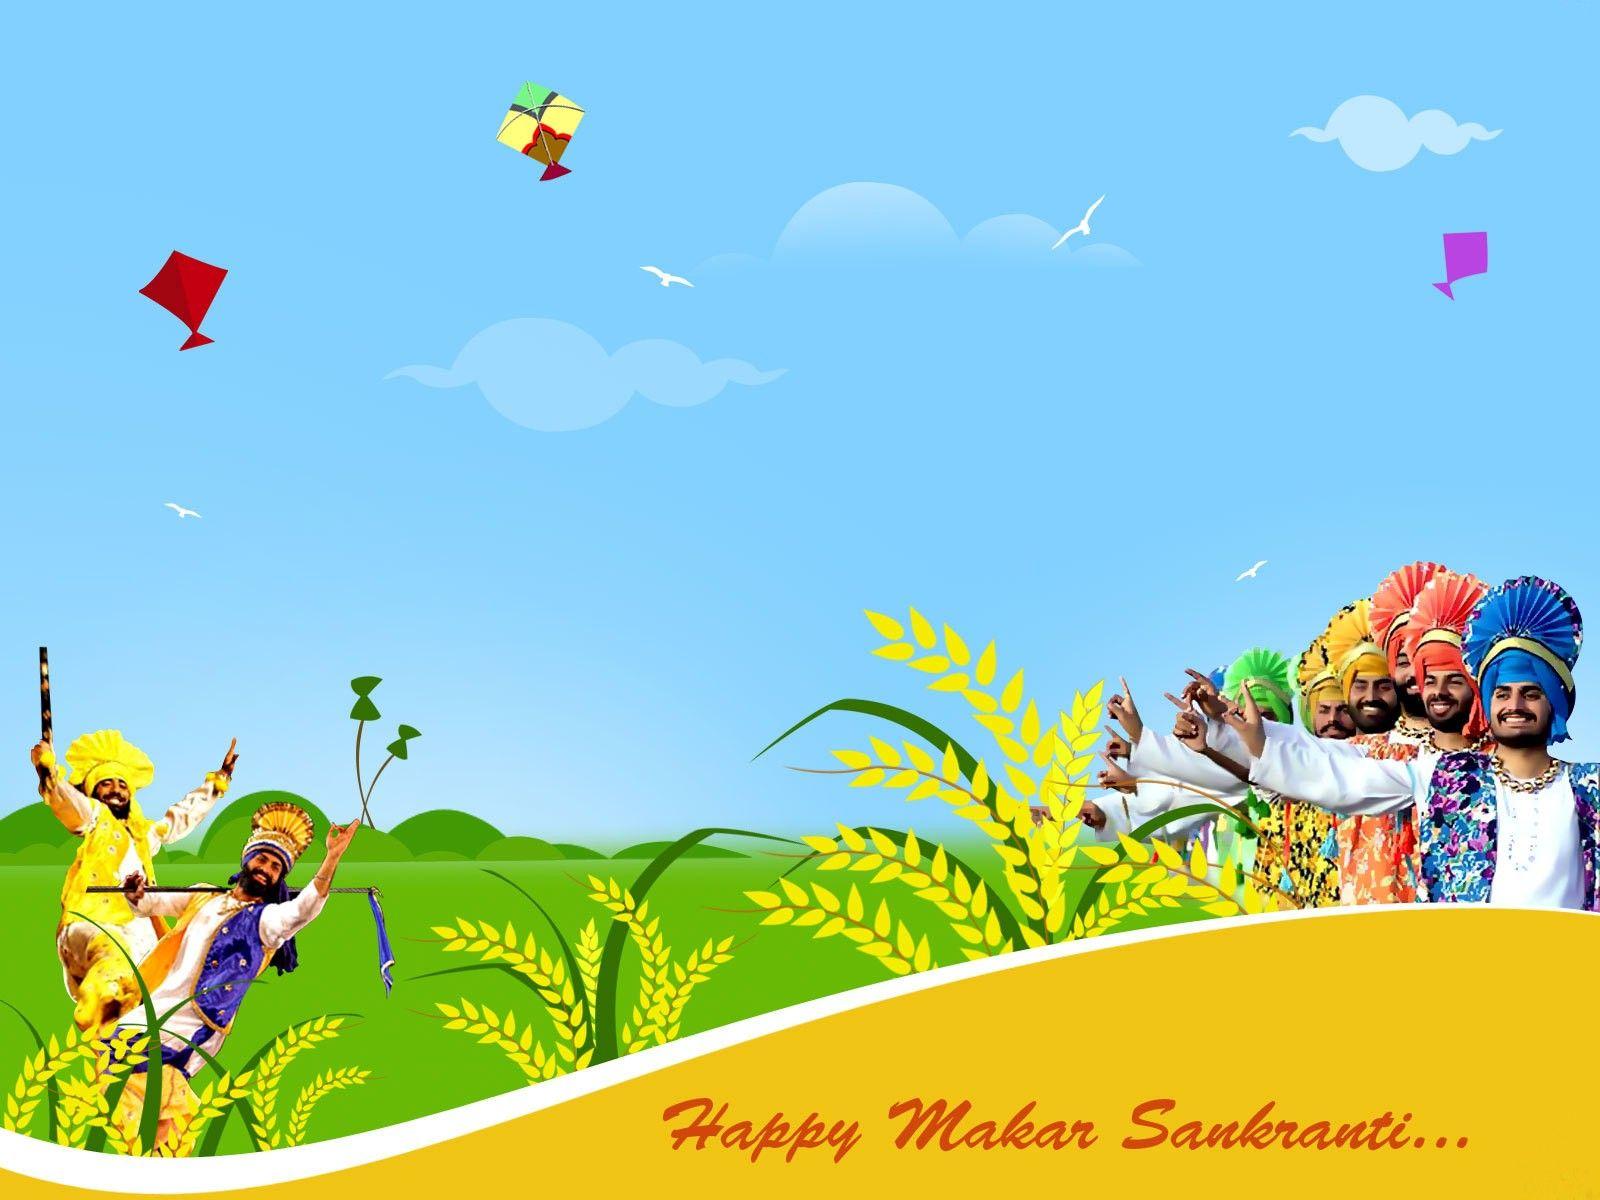 Happy Makar Sankranti Greetings Indian Festival HD Image. HD